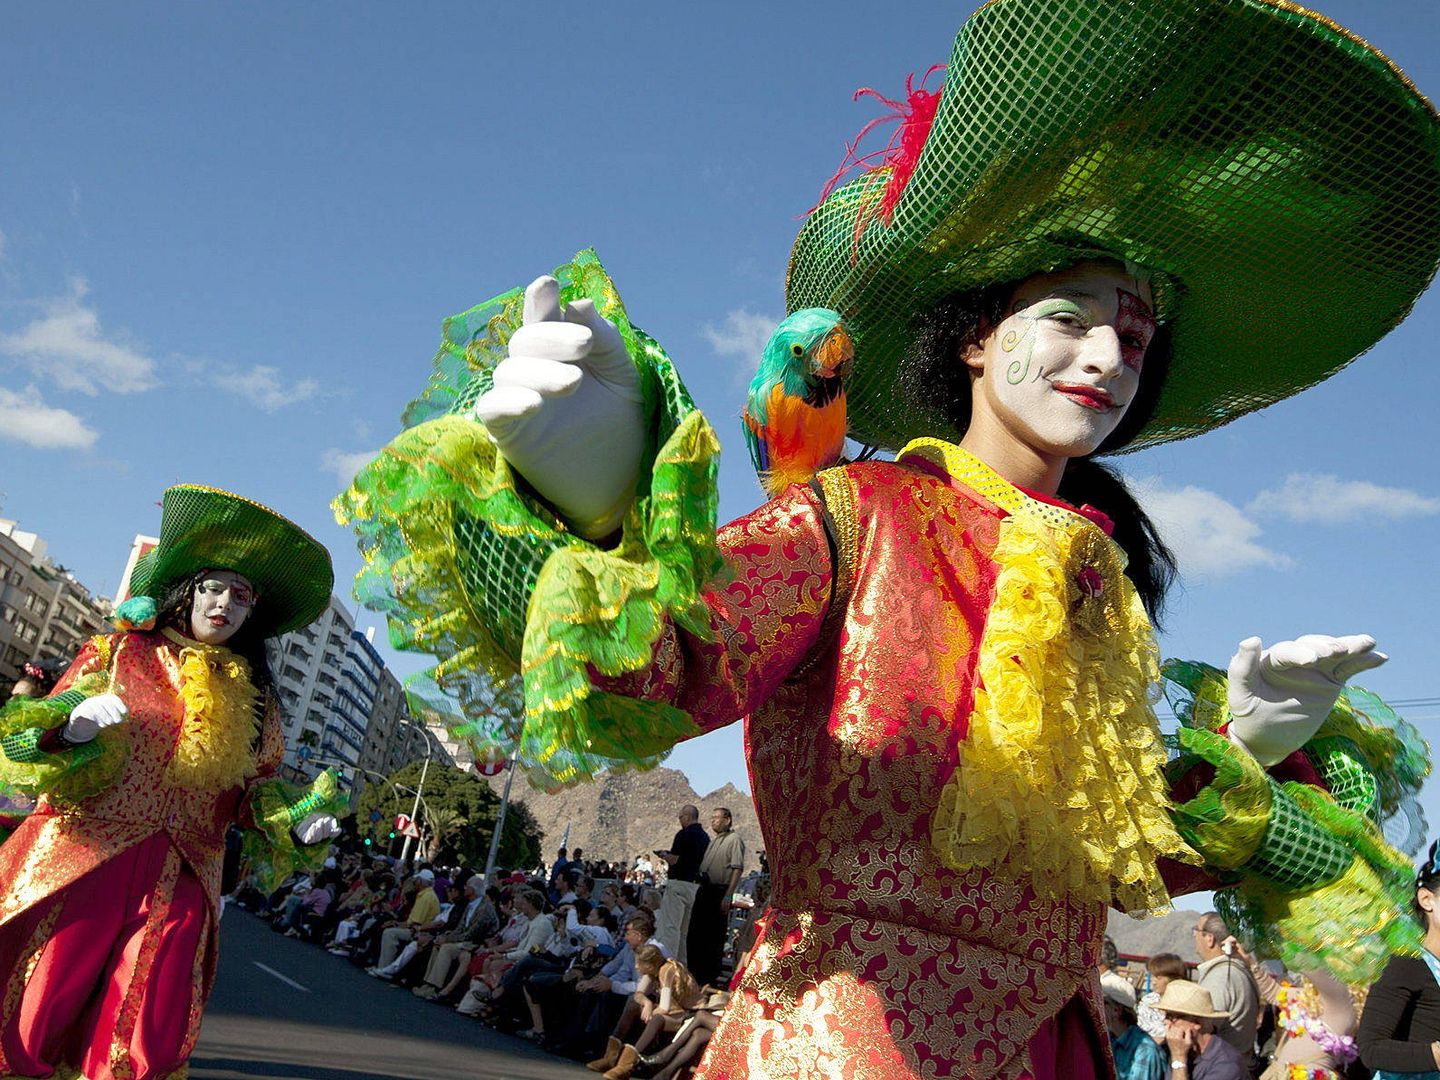 Componentes de la murga infantil en el Coso del Carnaval de Tenerife de 2012. (Efe)